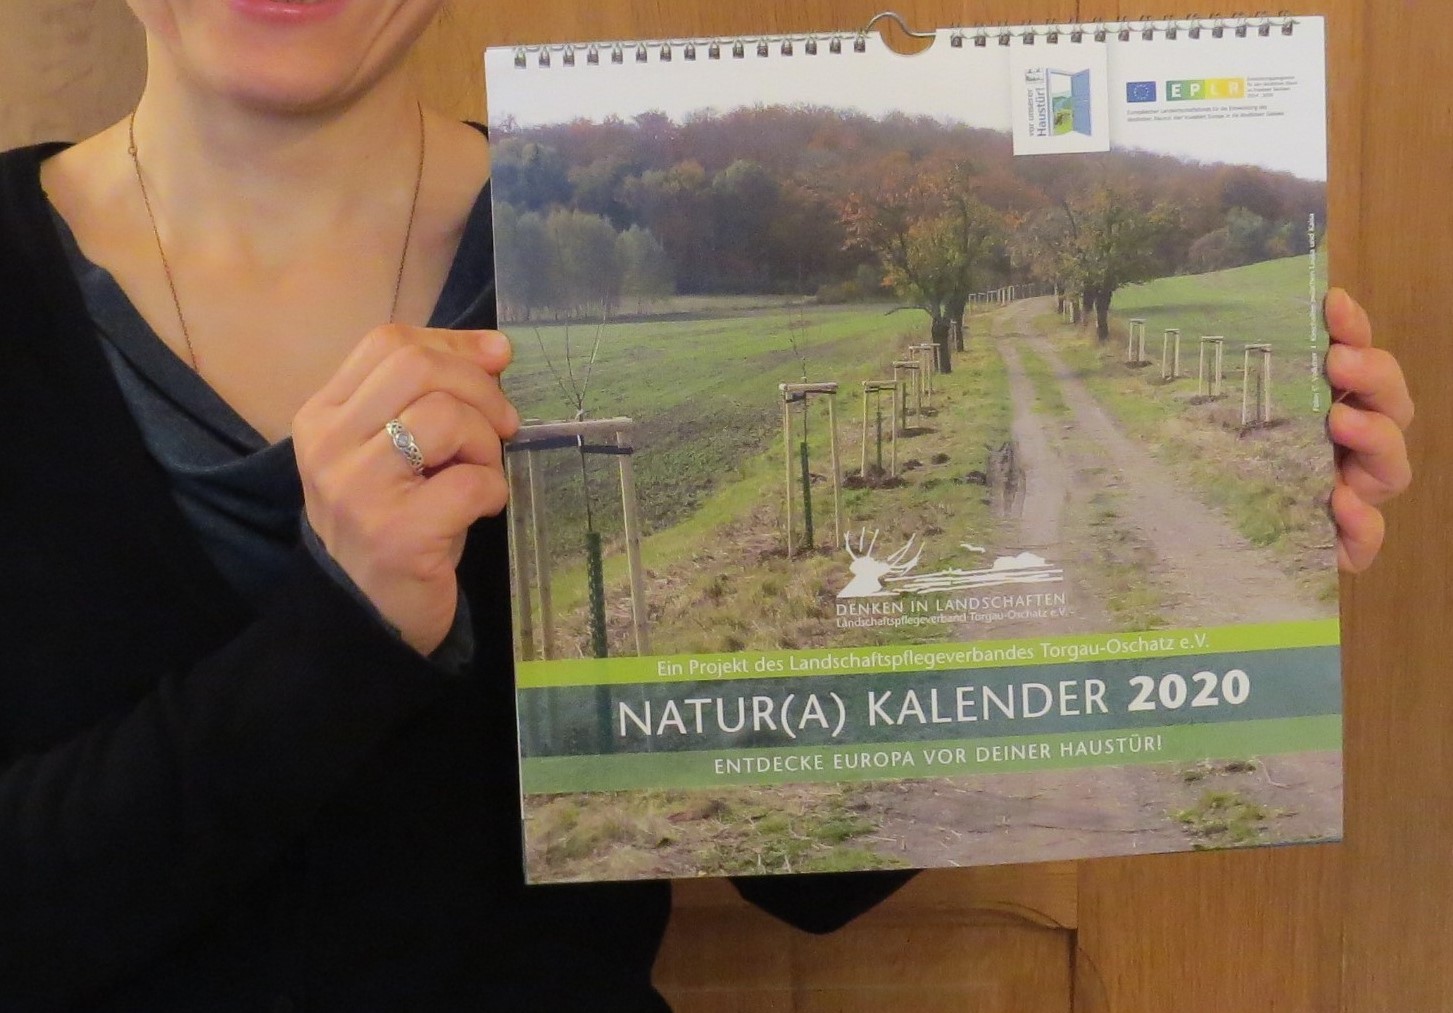 Natur(a) Kalender 2020